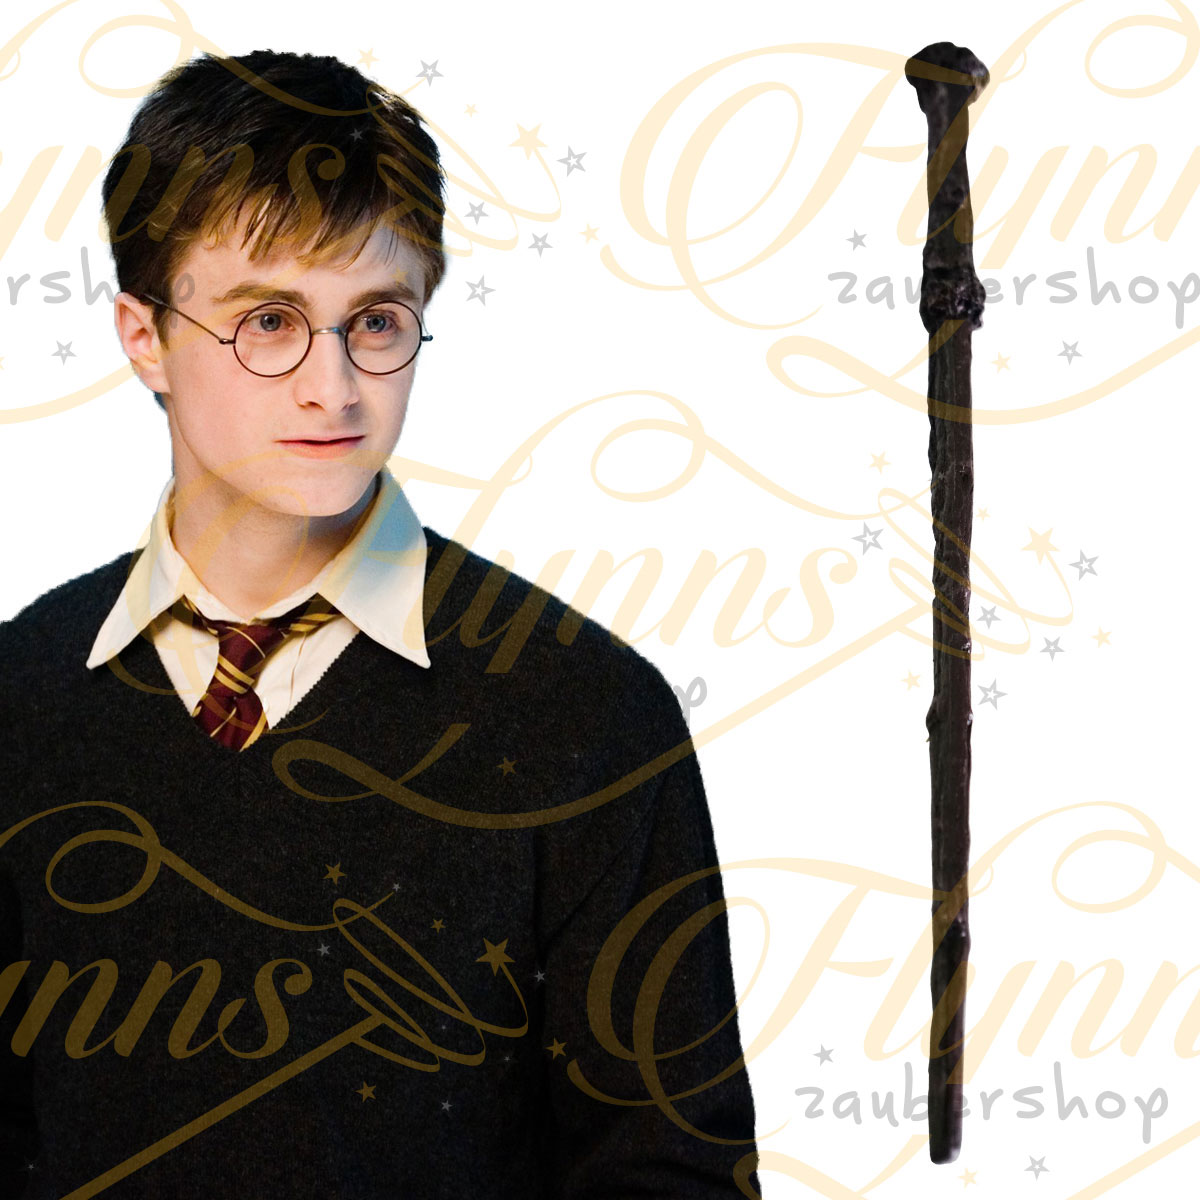 Harry Potter Zauberstab | Flynns Zaubershop